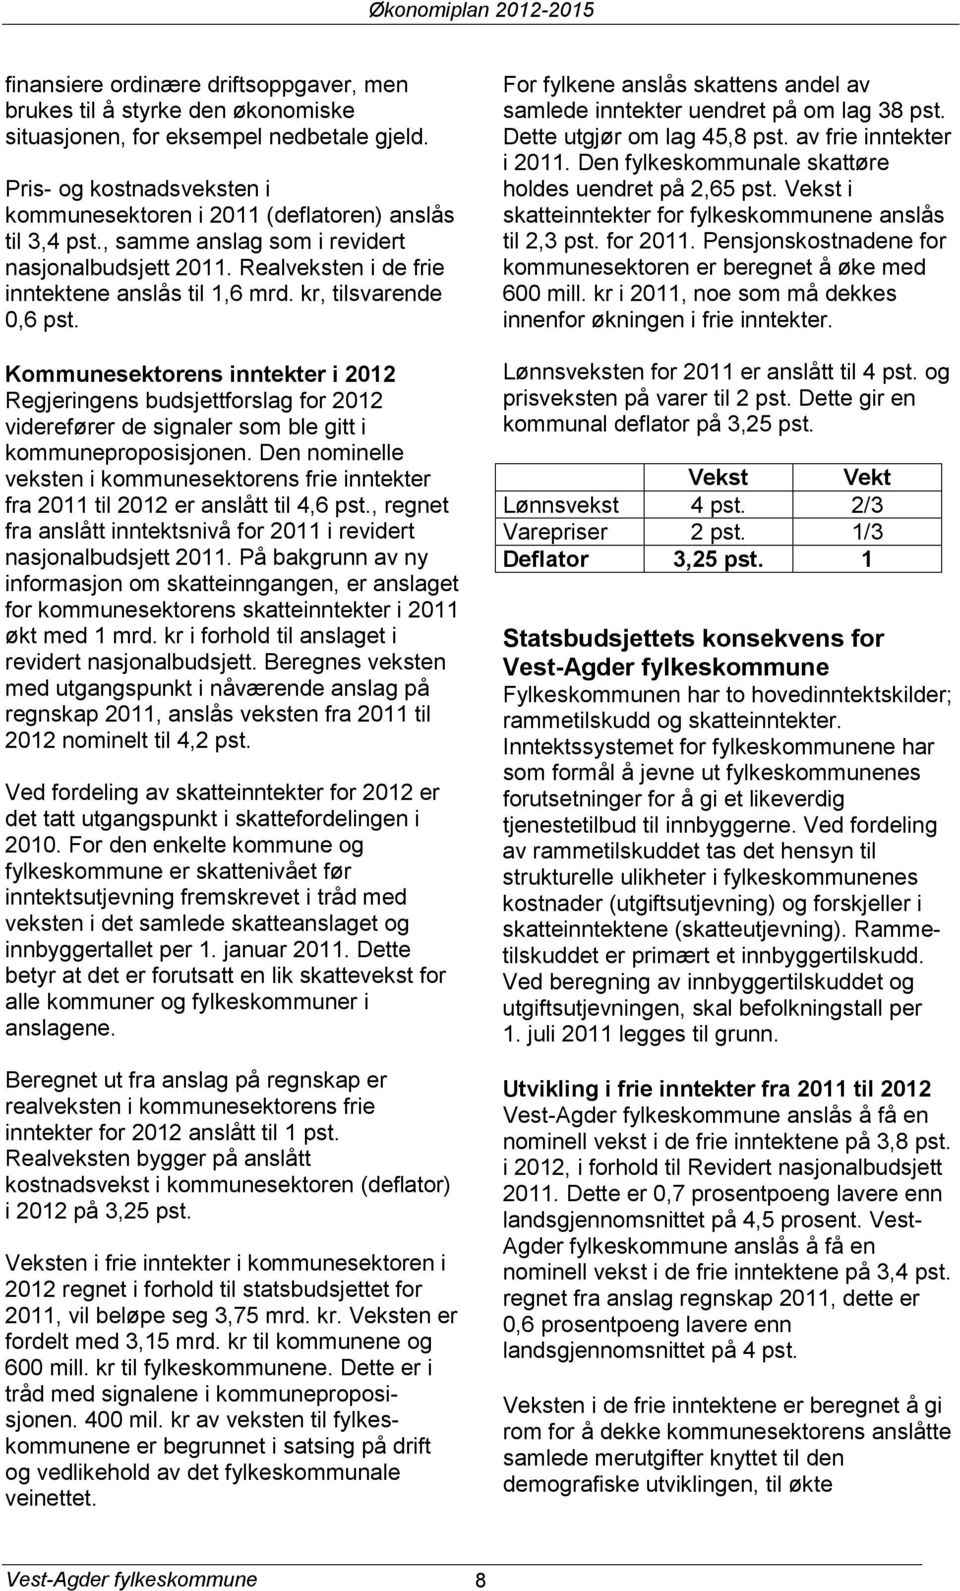 Kommunesektorens inntekter i 2012 Regjeringens budsjettforslag for 2012 viderefører de signaler som ble gitt i kommuneproposisjonen.